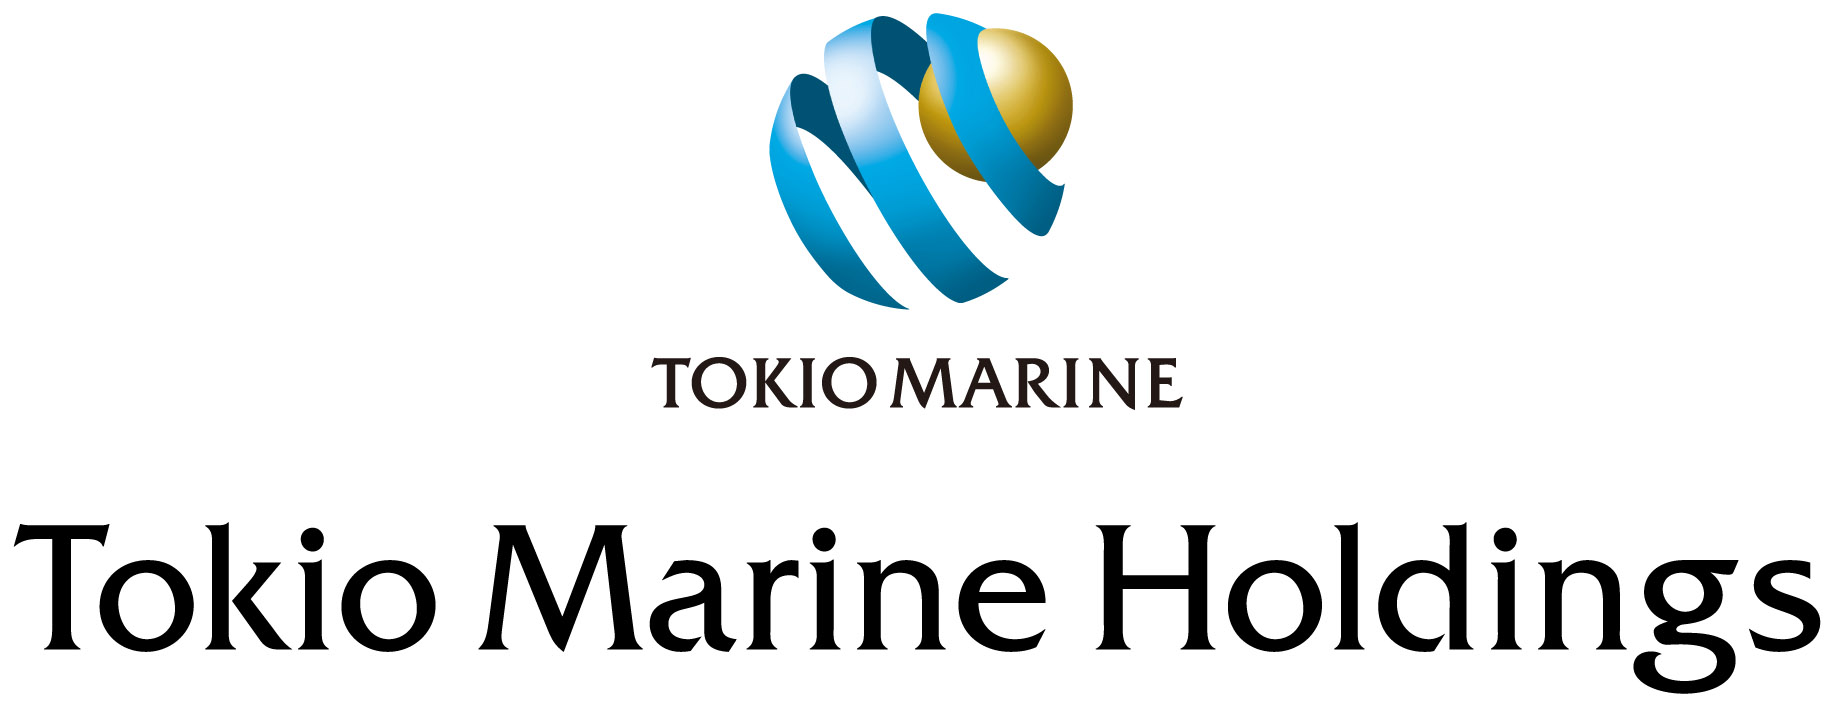 Jb tokio marine Tokio Marine